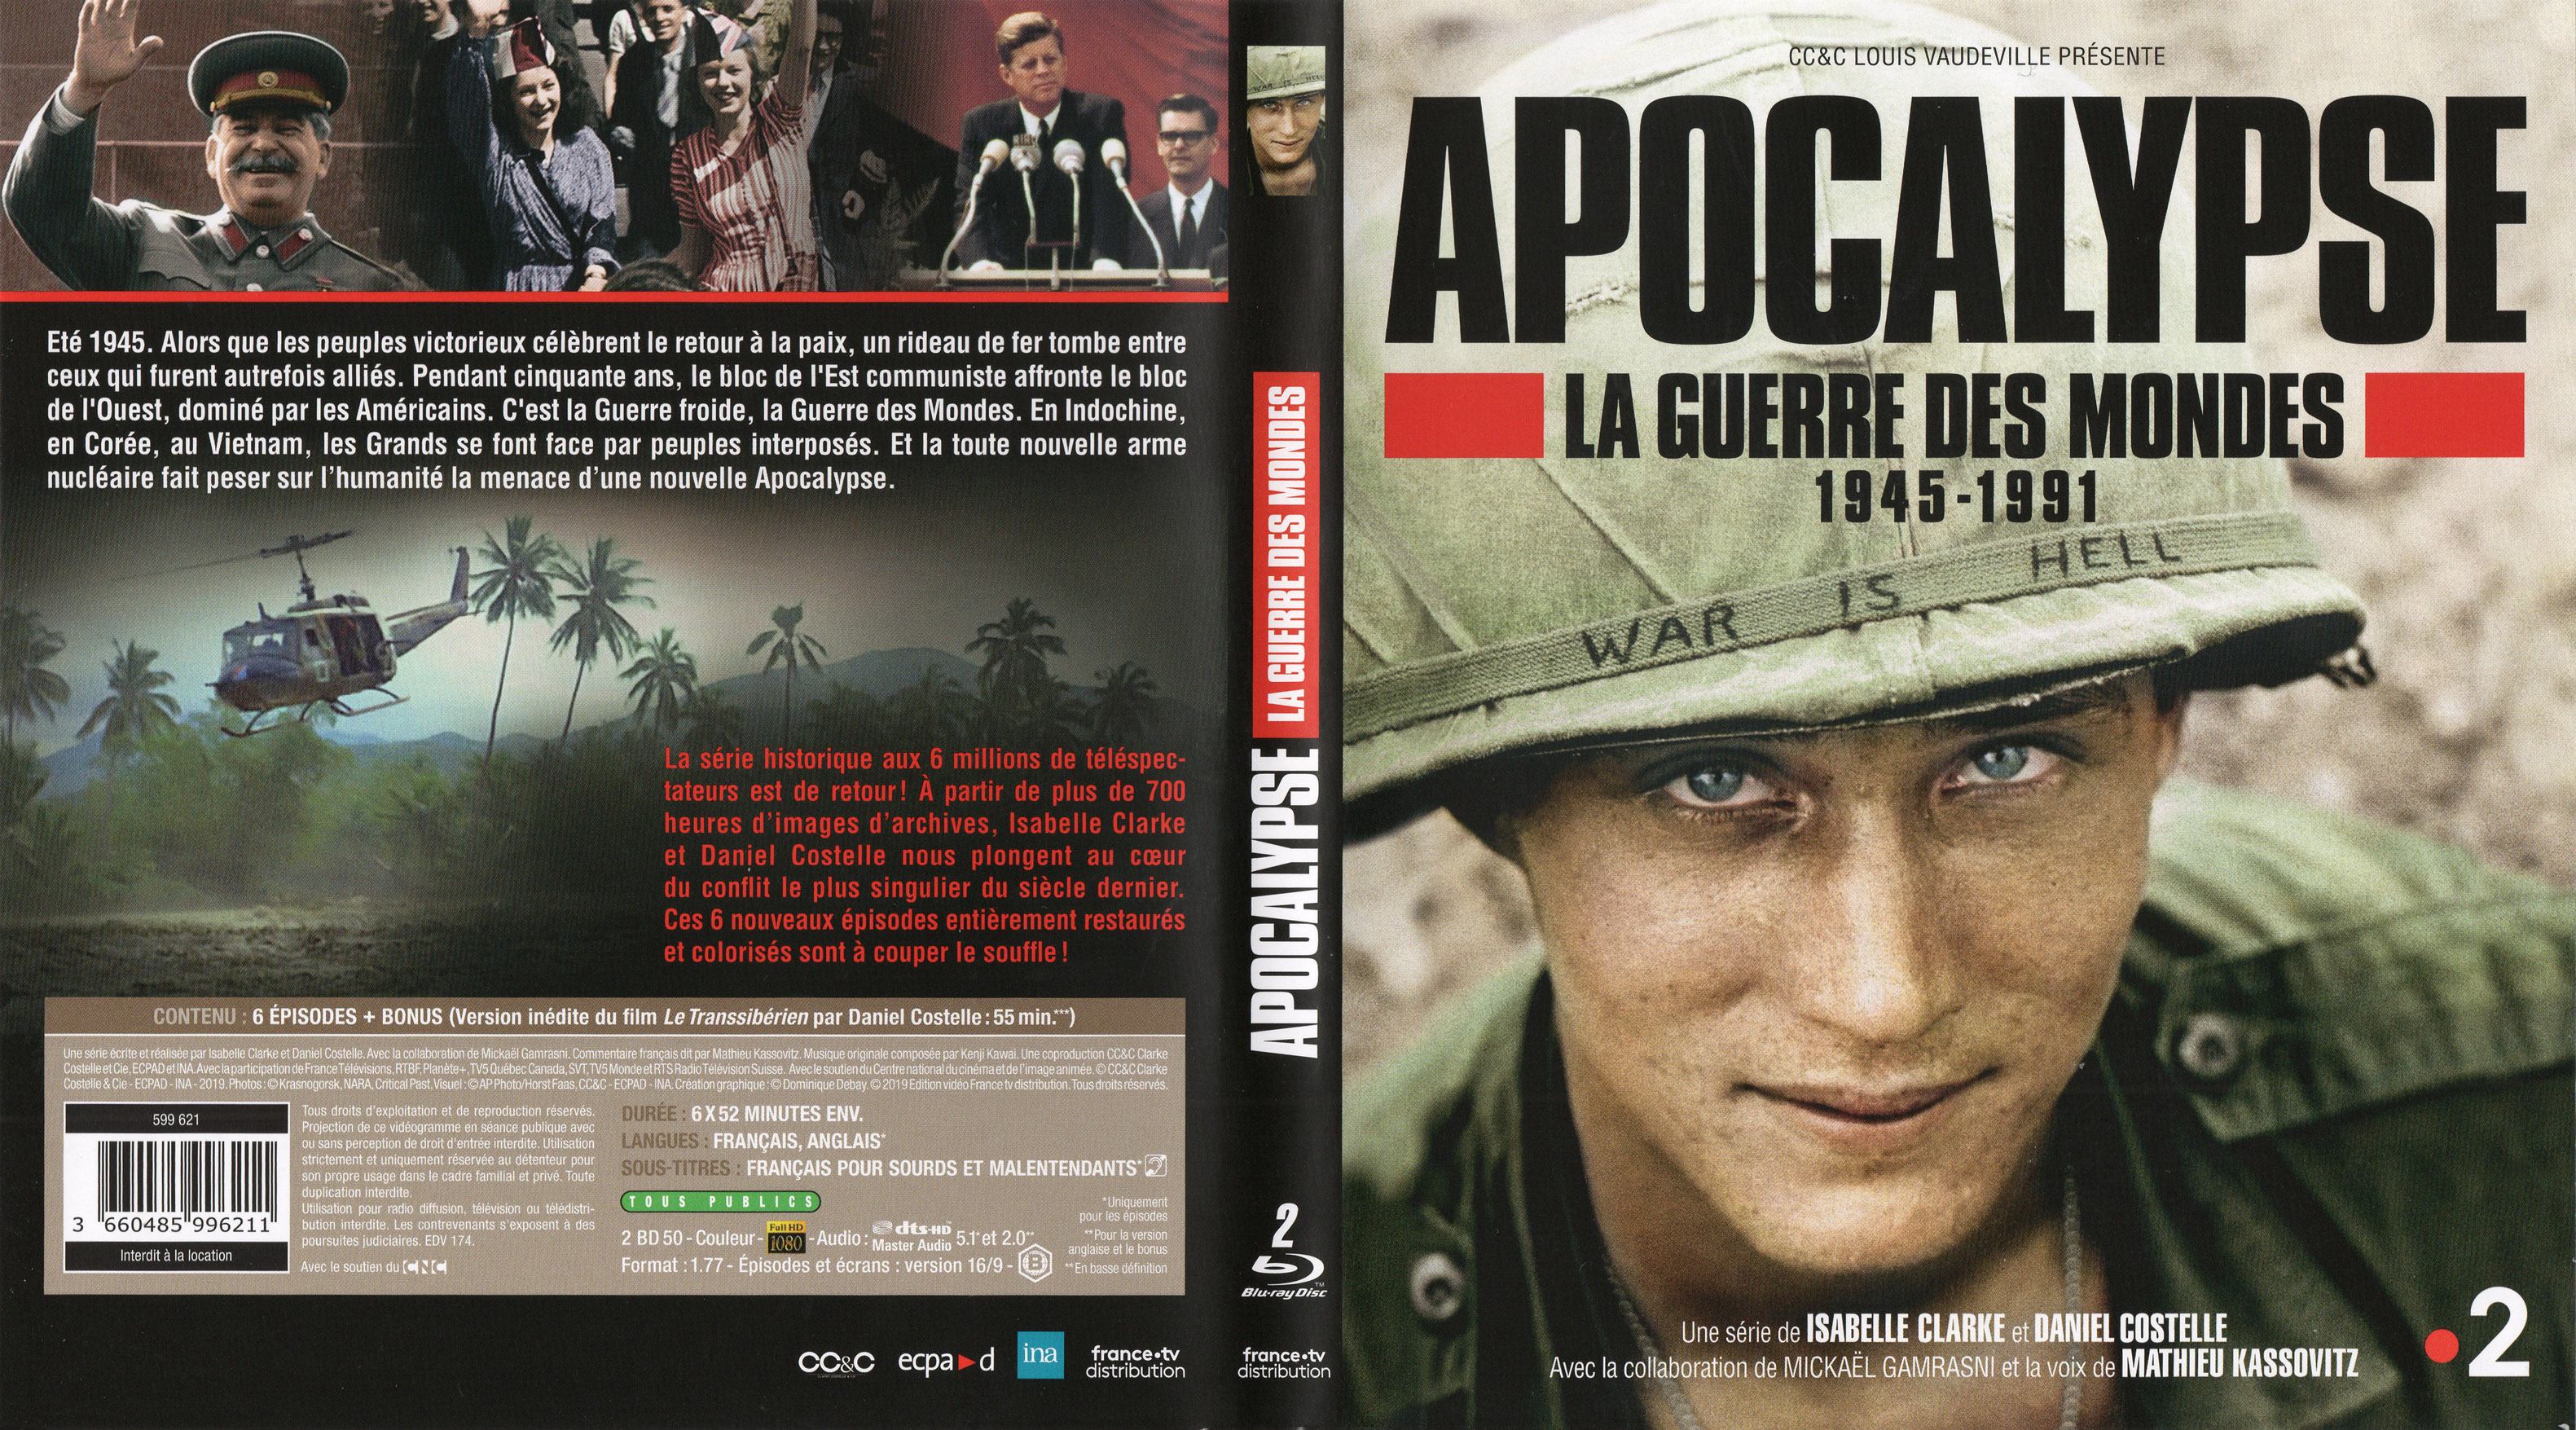 Jaquette DVD Apocalypse La guerre des mondes 1945-1991 (BLU-RAY)